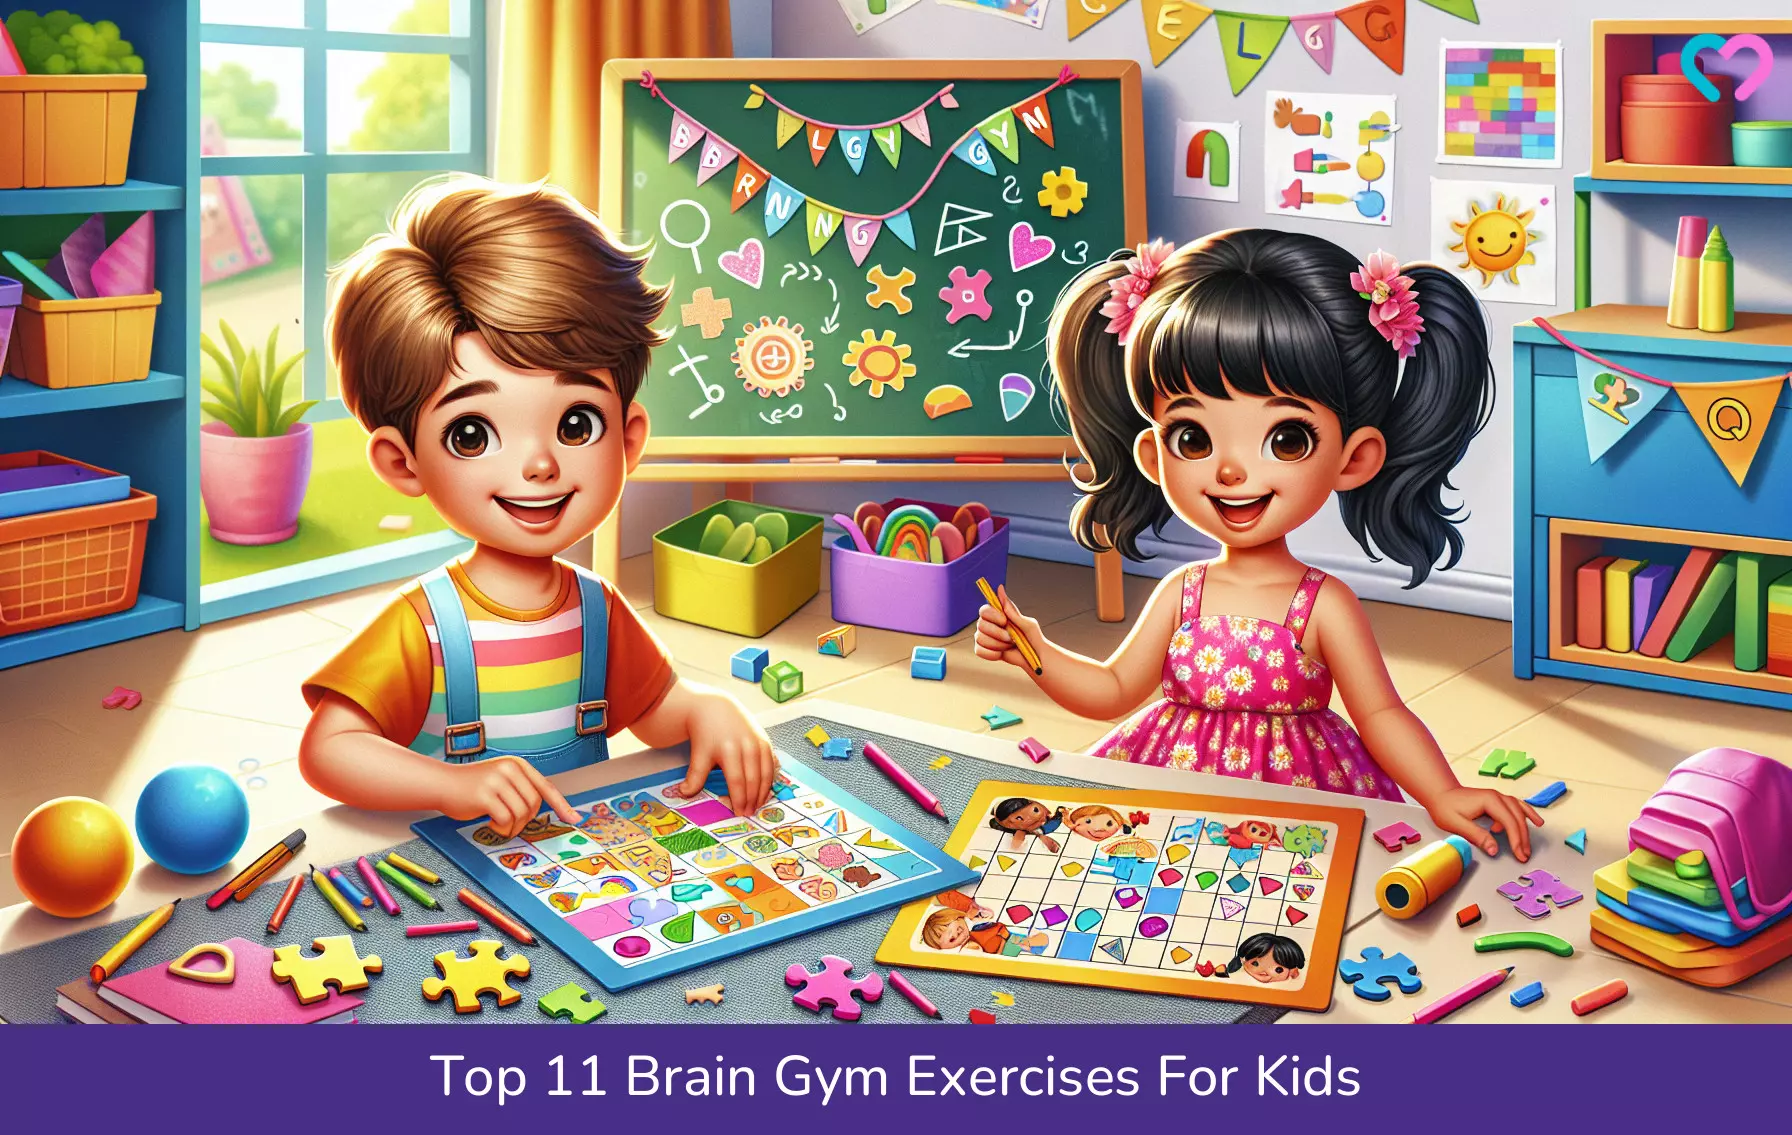 Brain Gym Exercises For Kids_illustration